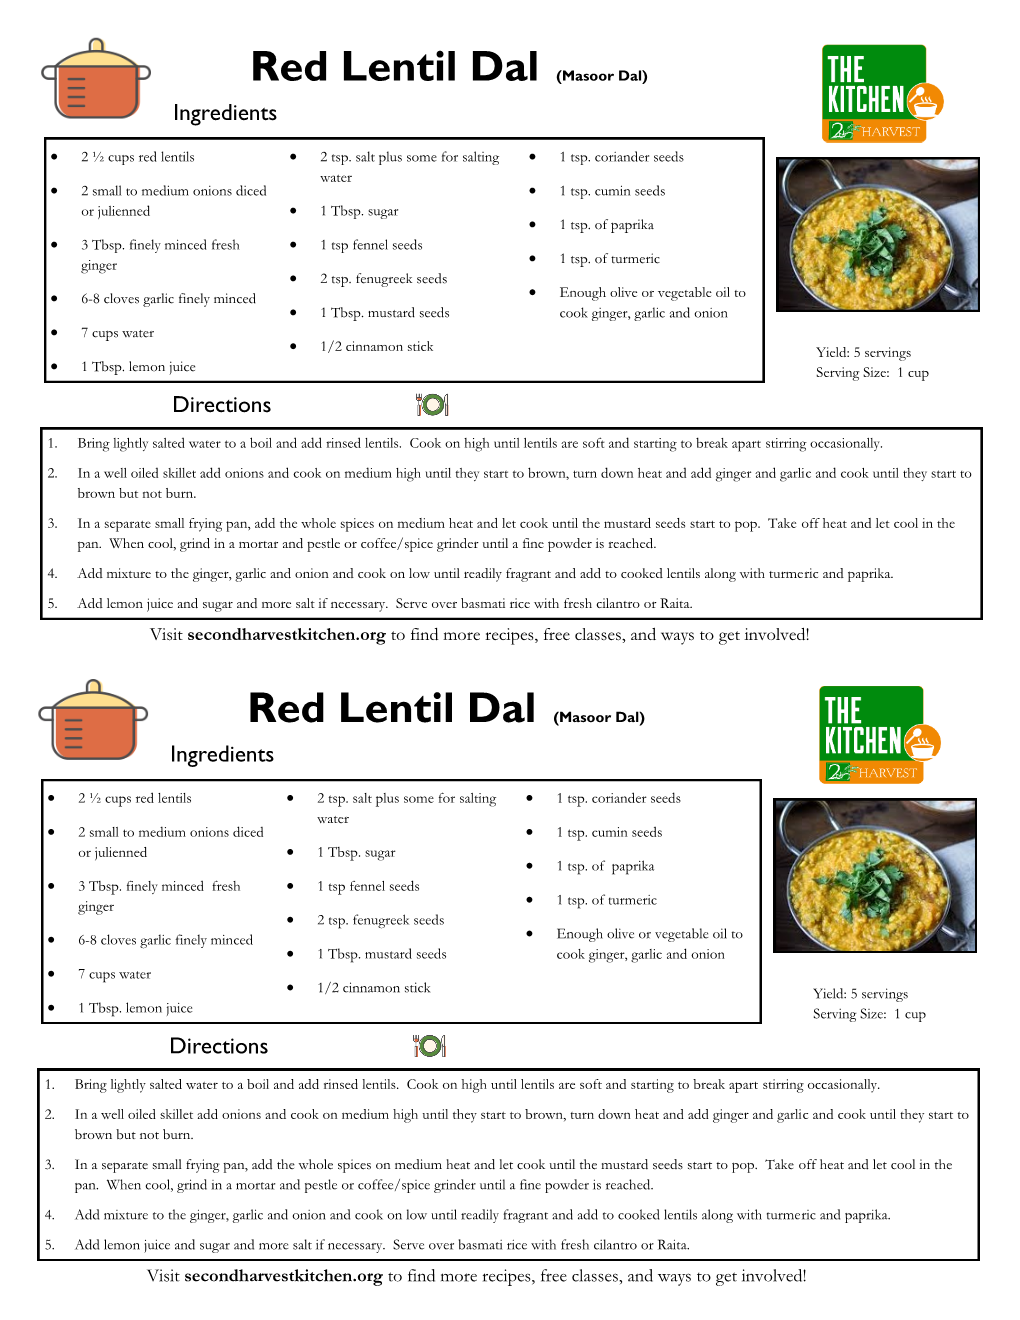 Red Lentil Dal (Masoor Dal) Ingredients